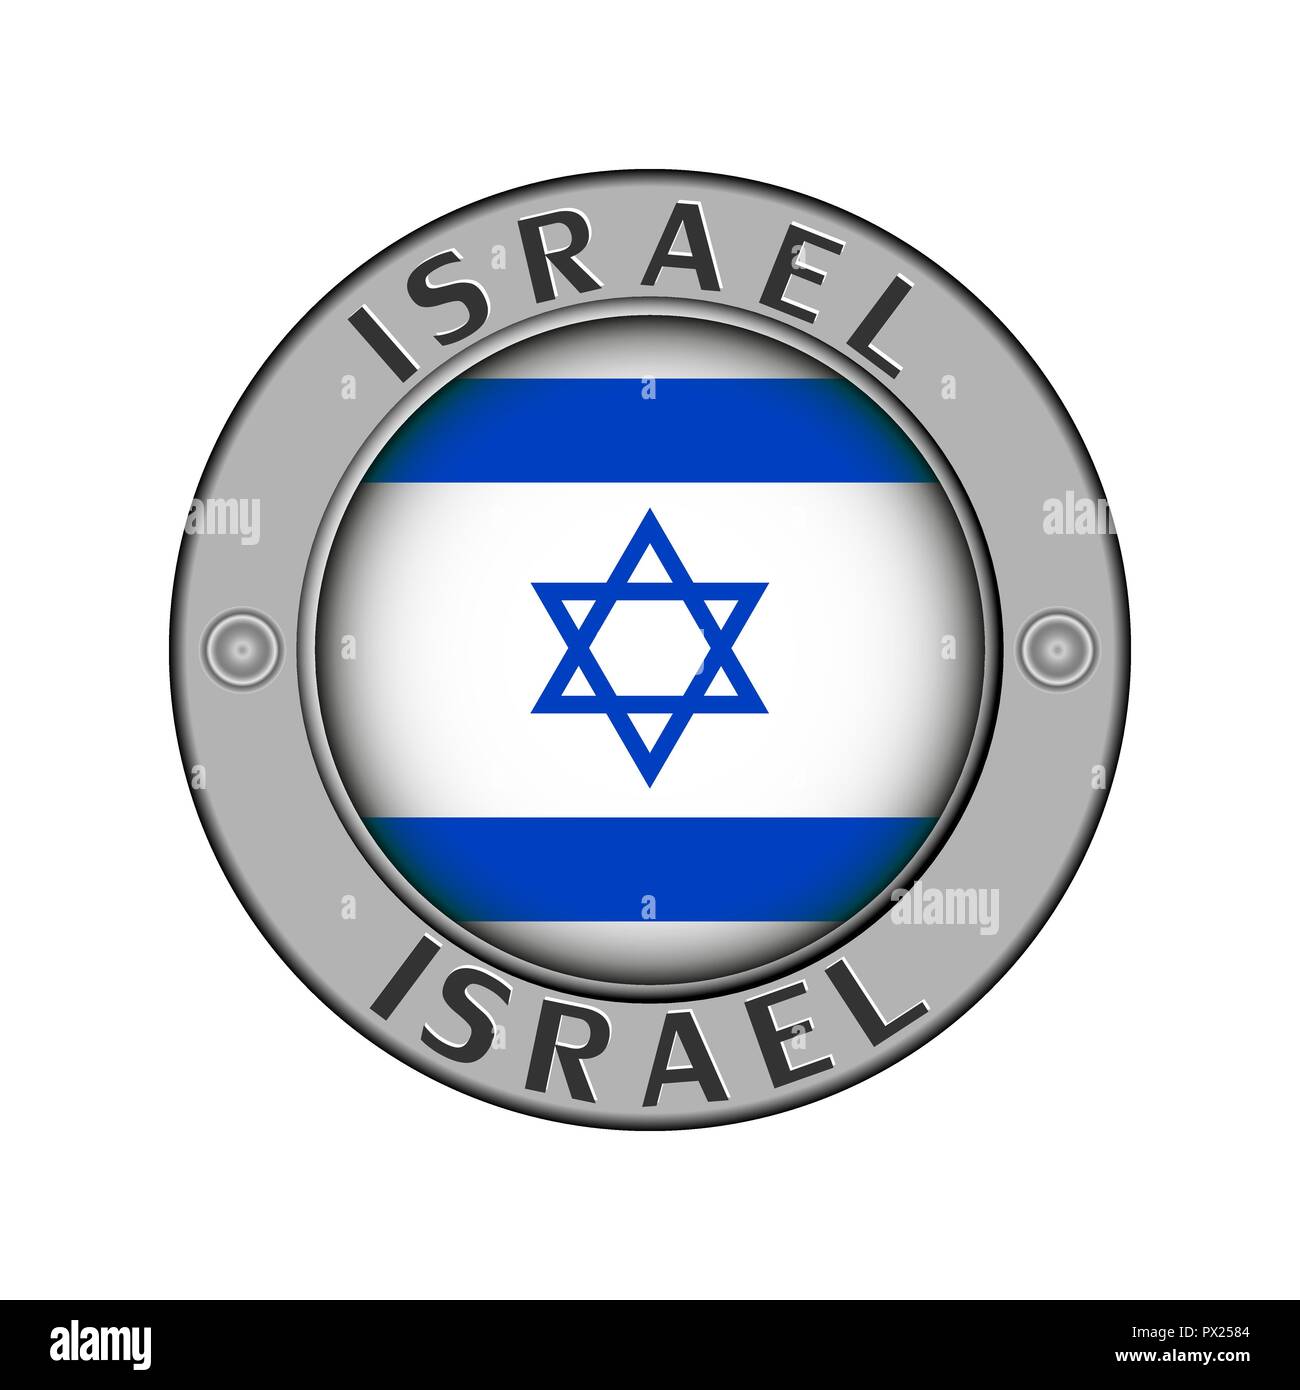 Rotondo di metallo medaglione con il nome del paese di Israele e un indicatore rotondo nel centro Illustrazione Vettoriale